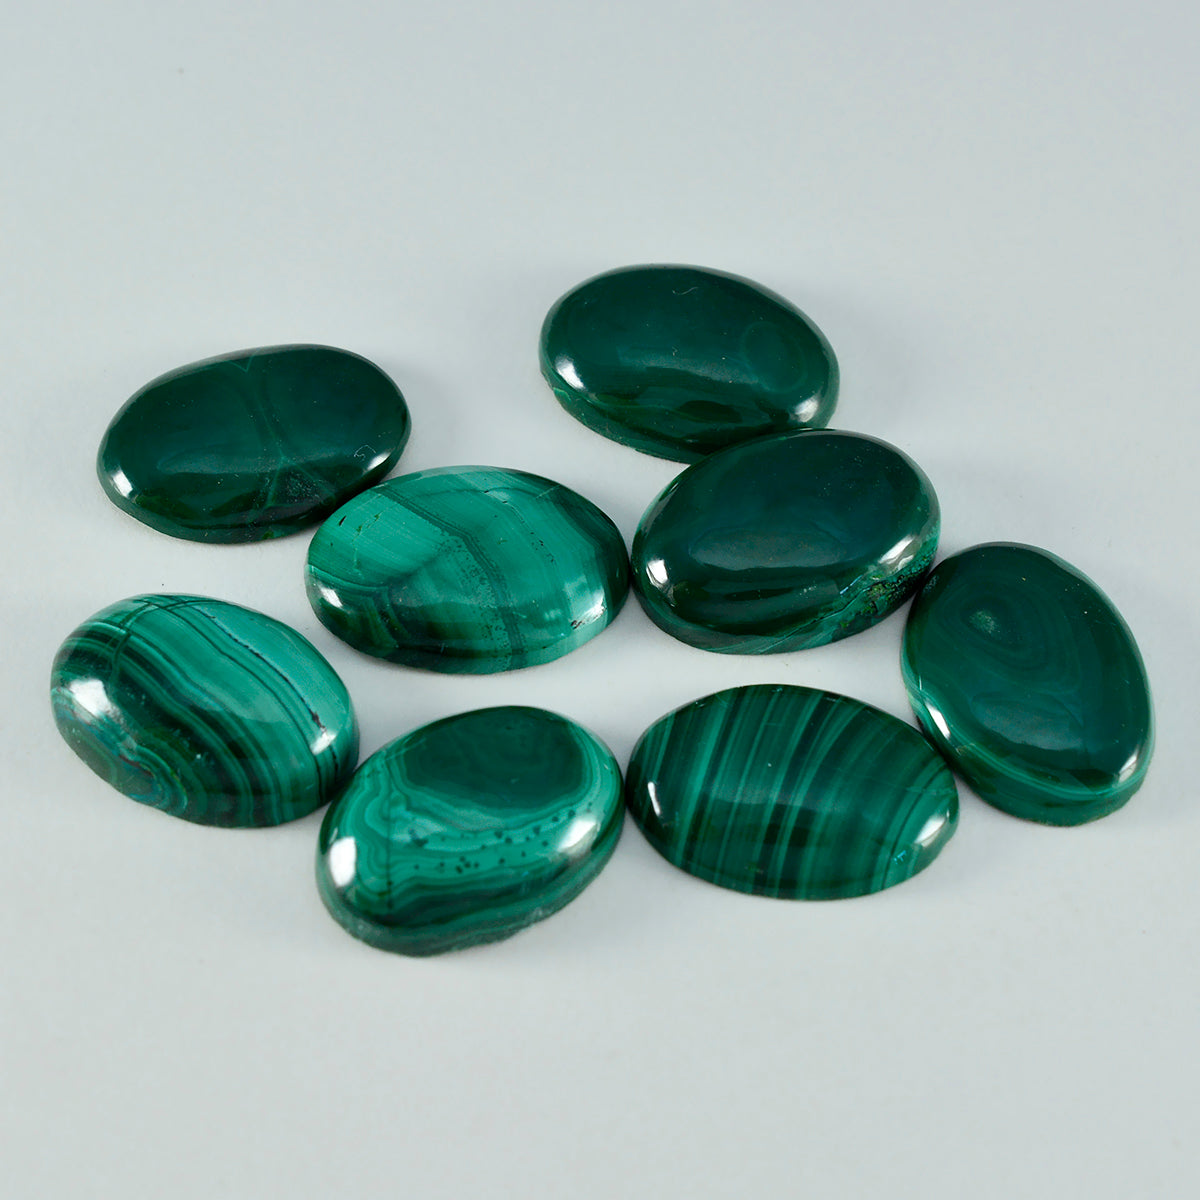 riyogems 1шт зеленый малахит кабошон 10x14 мм овальной формы качественный драгоценный камень россыпью